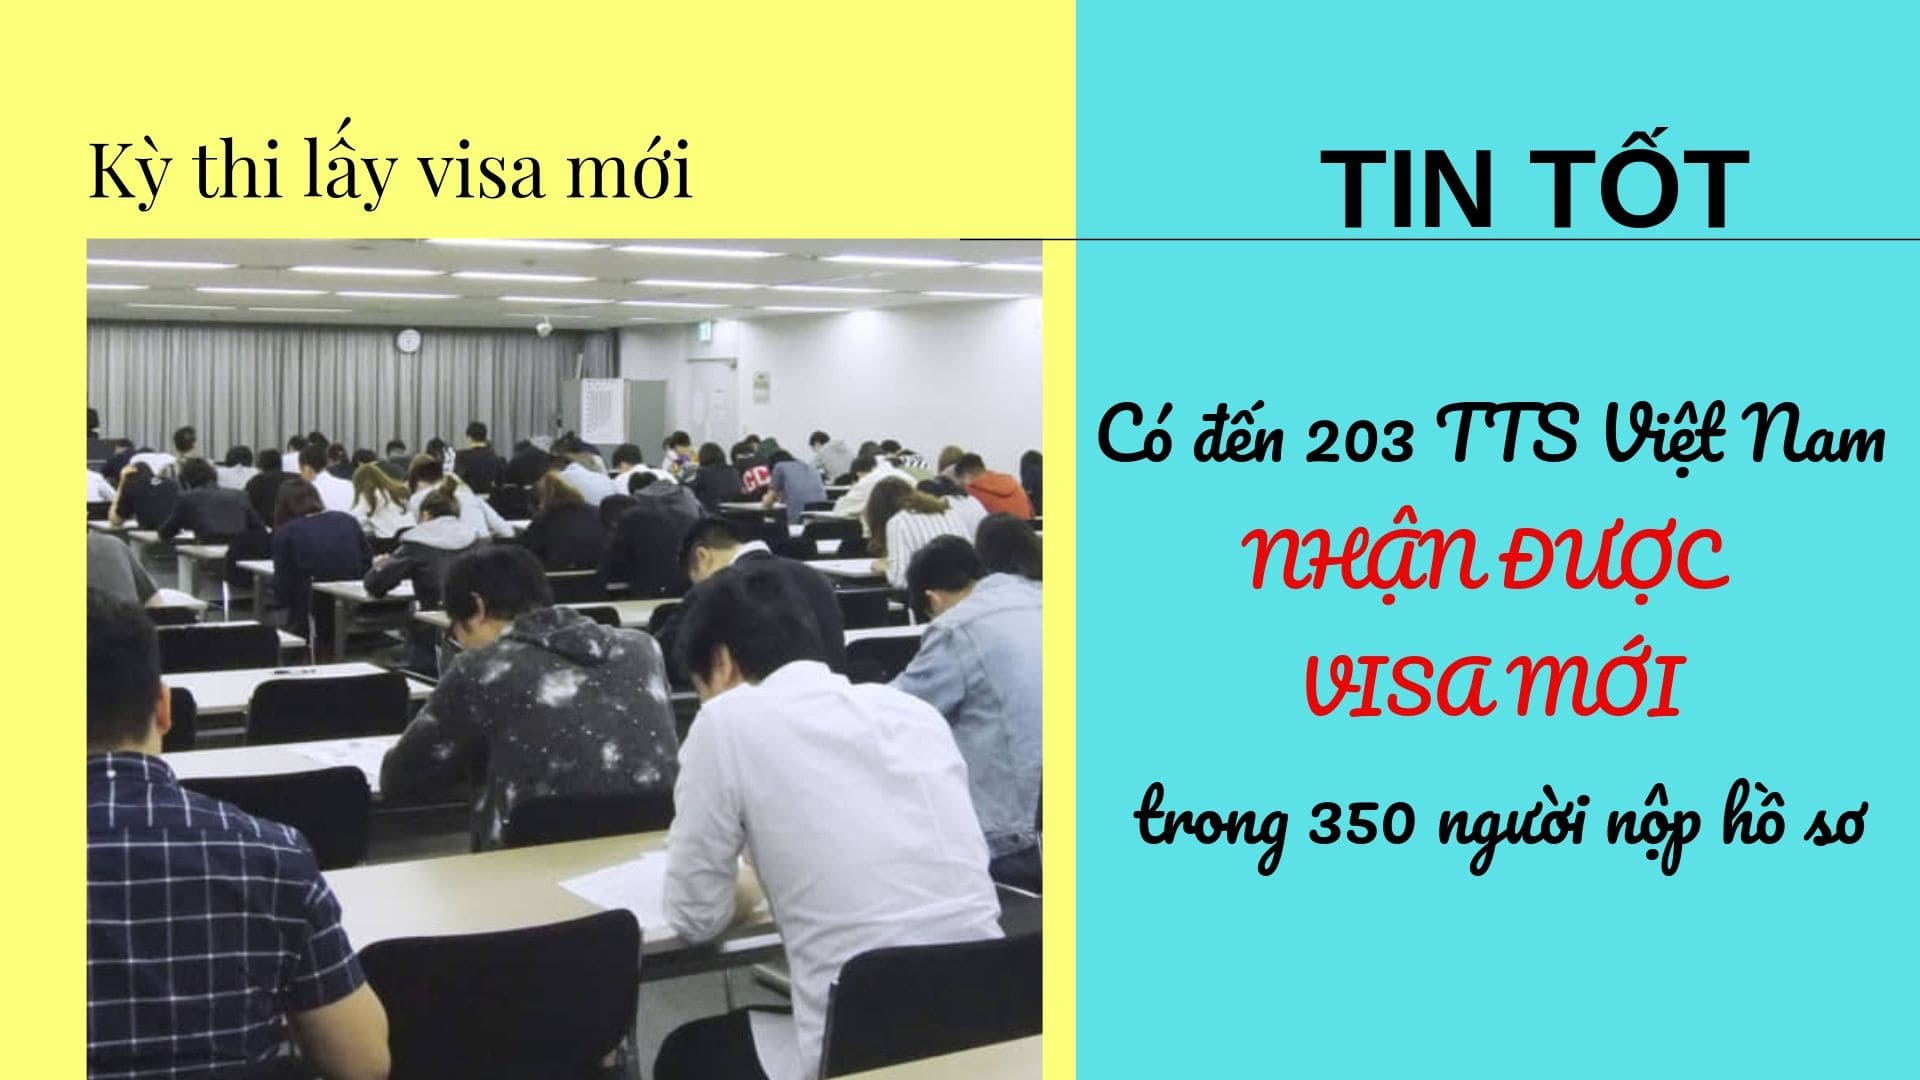 [TIN TỐT] 203 TTS Việt Nam đầu tiên chính thức nhận được visa kỹ năng đặc định ngành thực phẩm